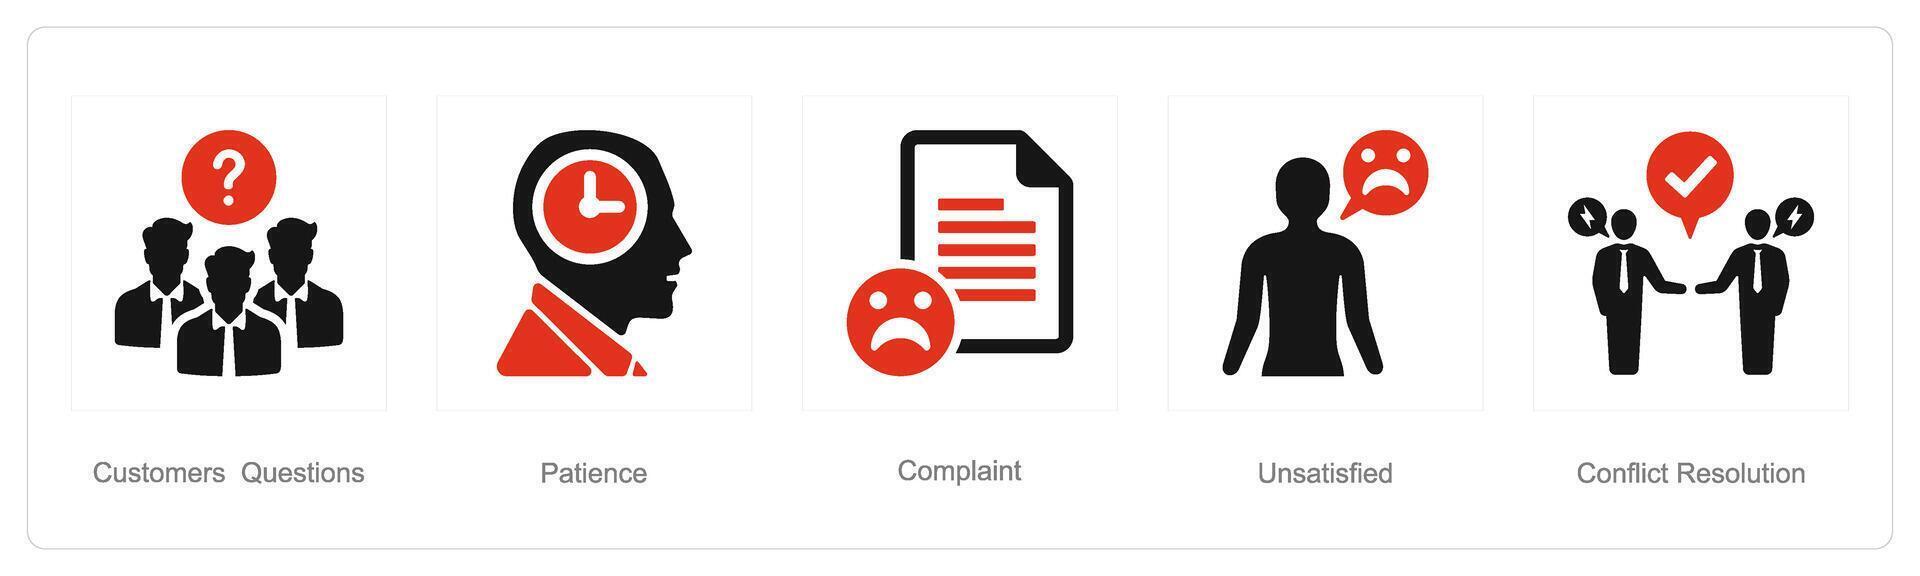 en uppsättning av 5 kund service ikoner som kund frågor, tålamod, klagomål vektor